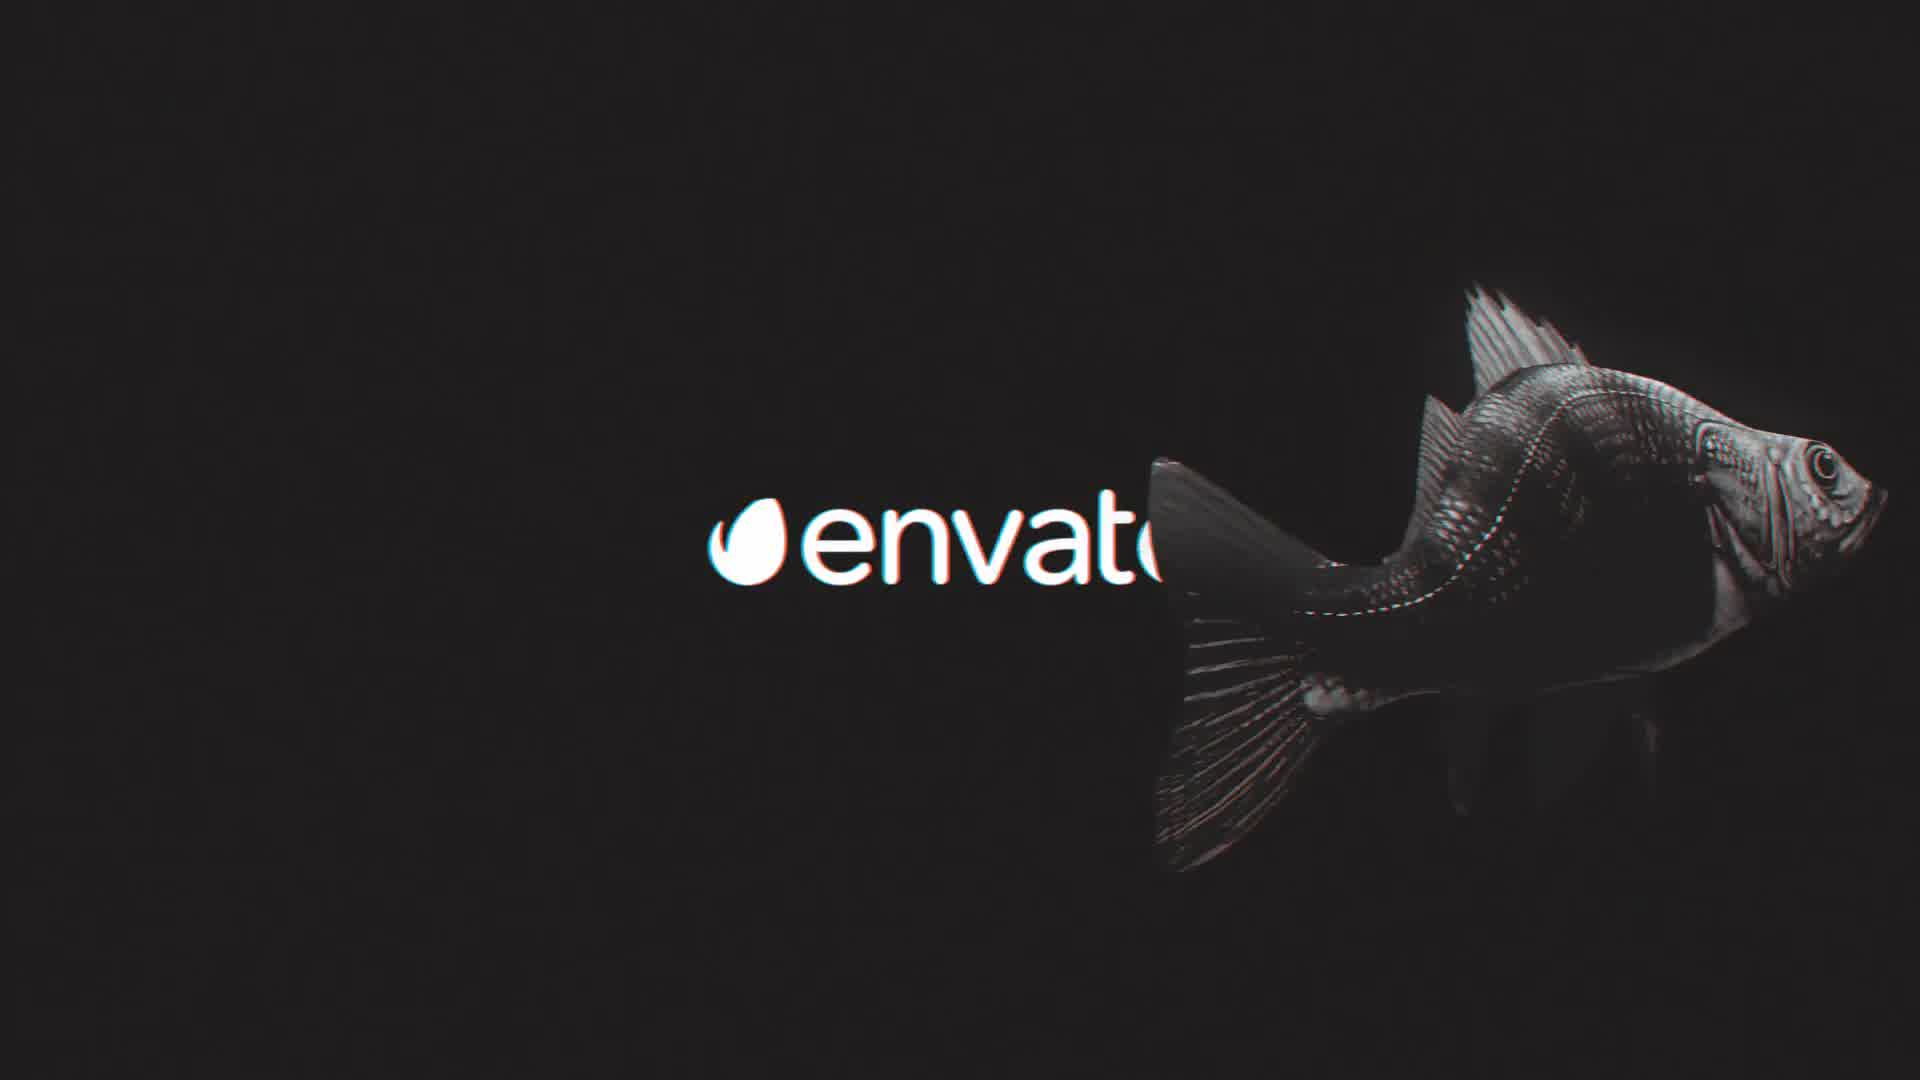 Fish Glitch Logo Reveal Videohive 23969483 Premiere Pro Image 8